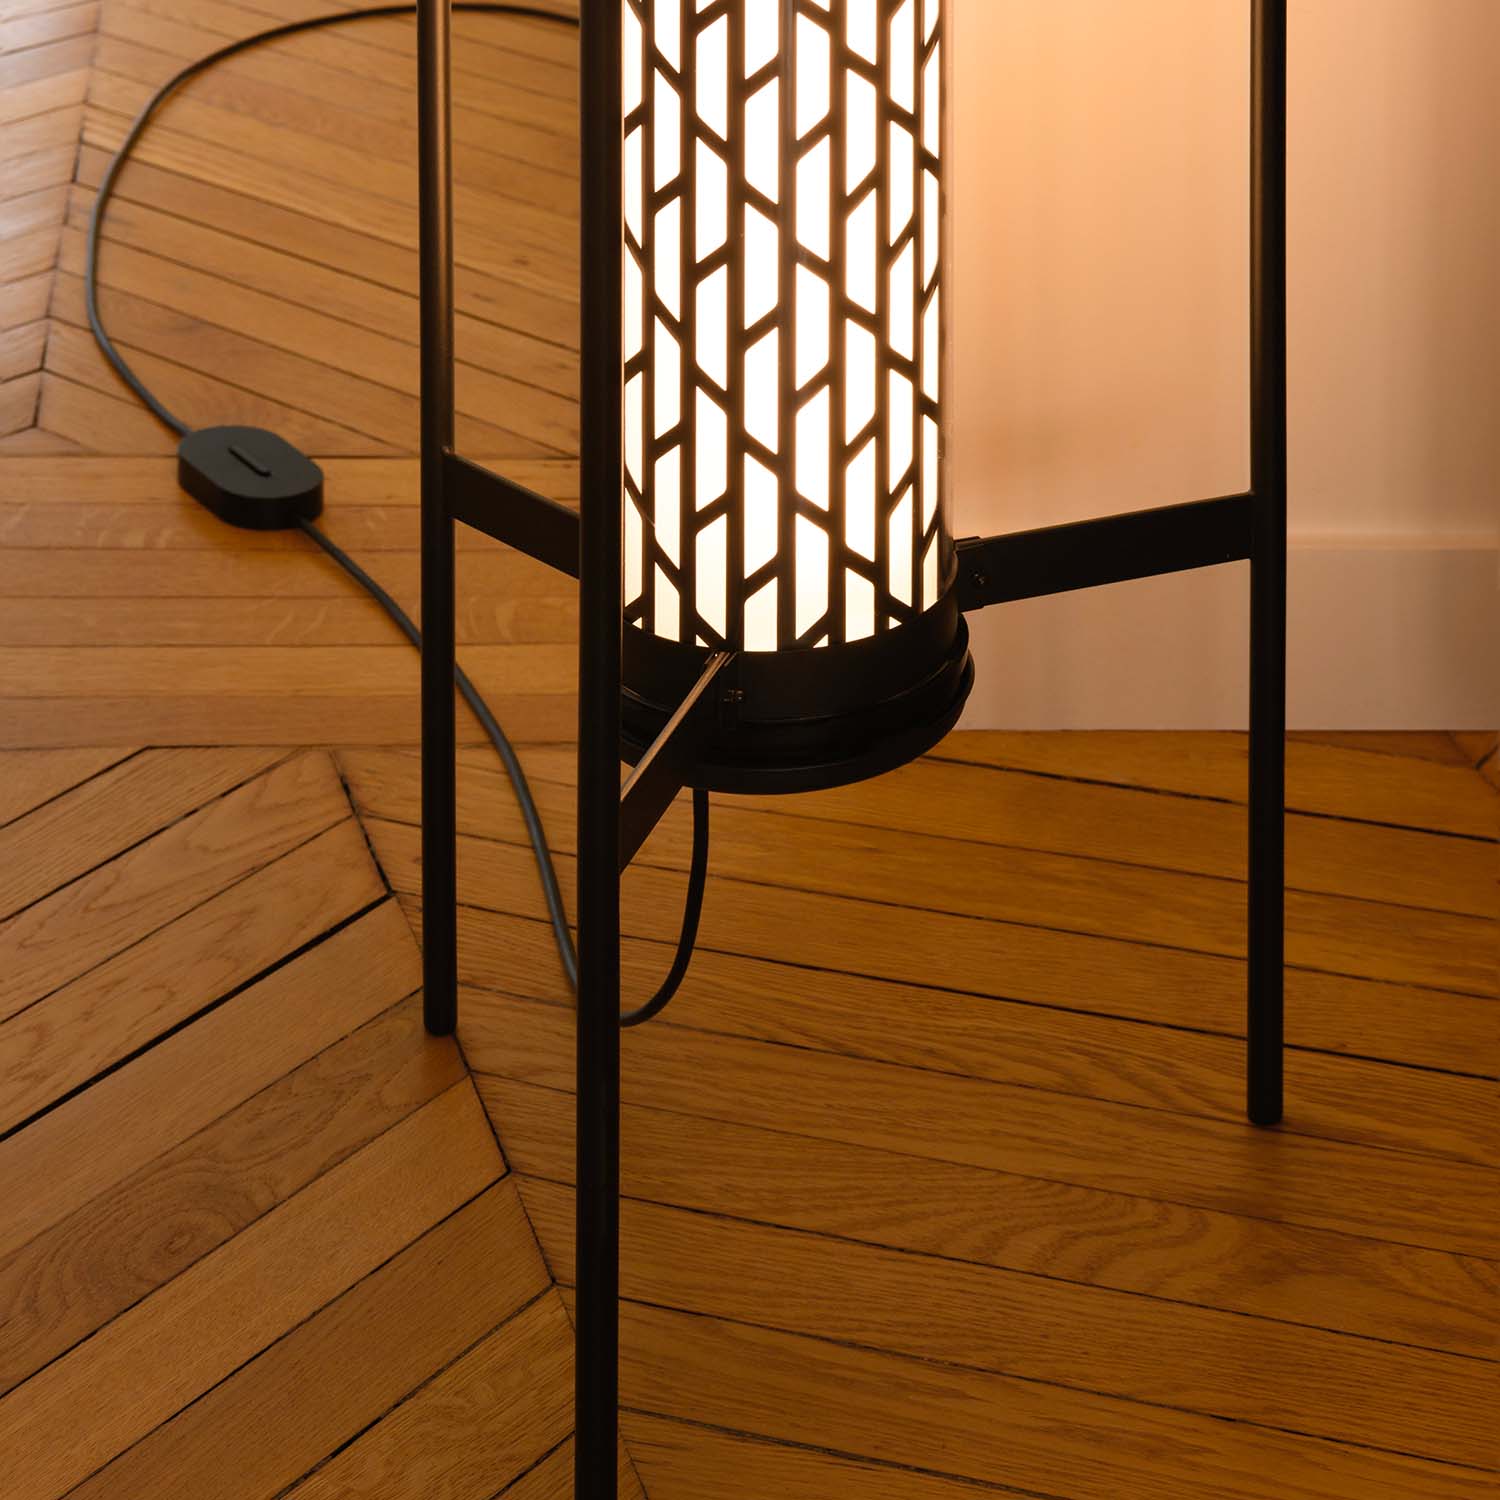 BELLEVILLE - Industrial glass tube floor lamp for living room